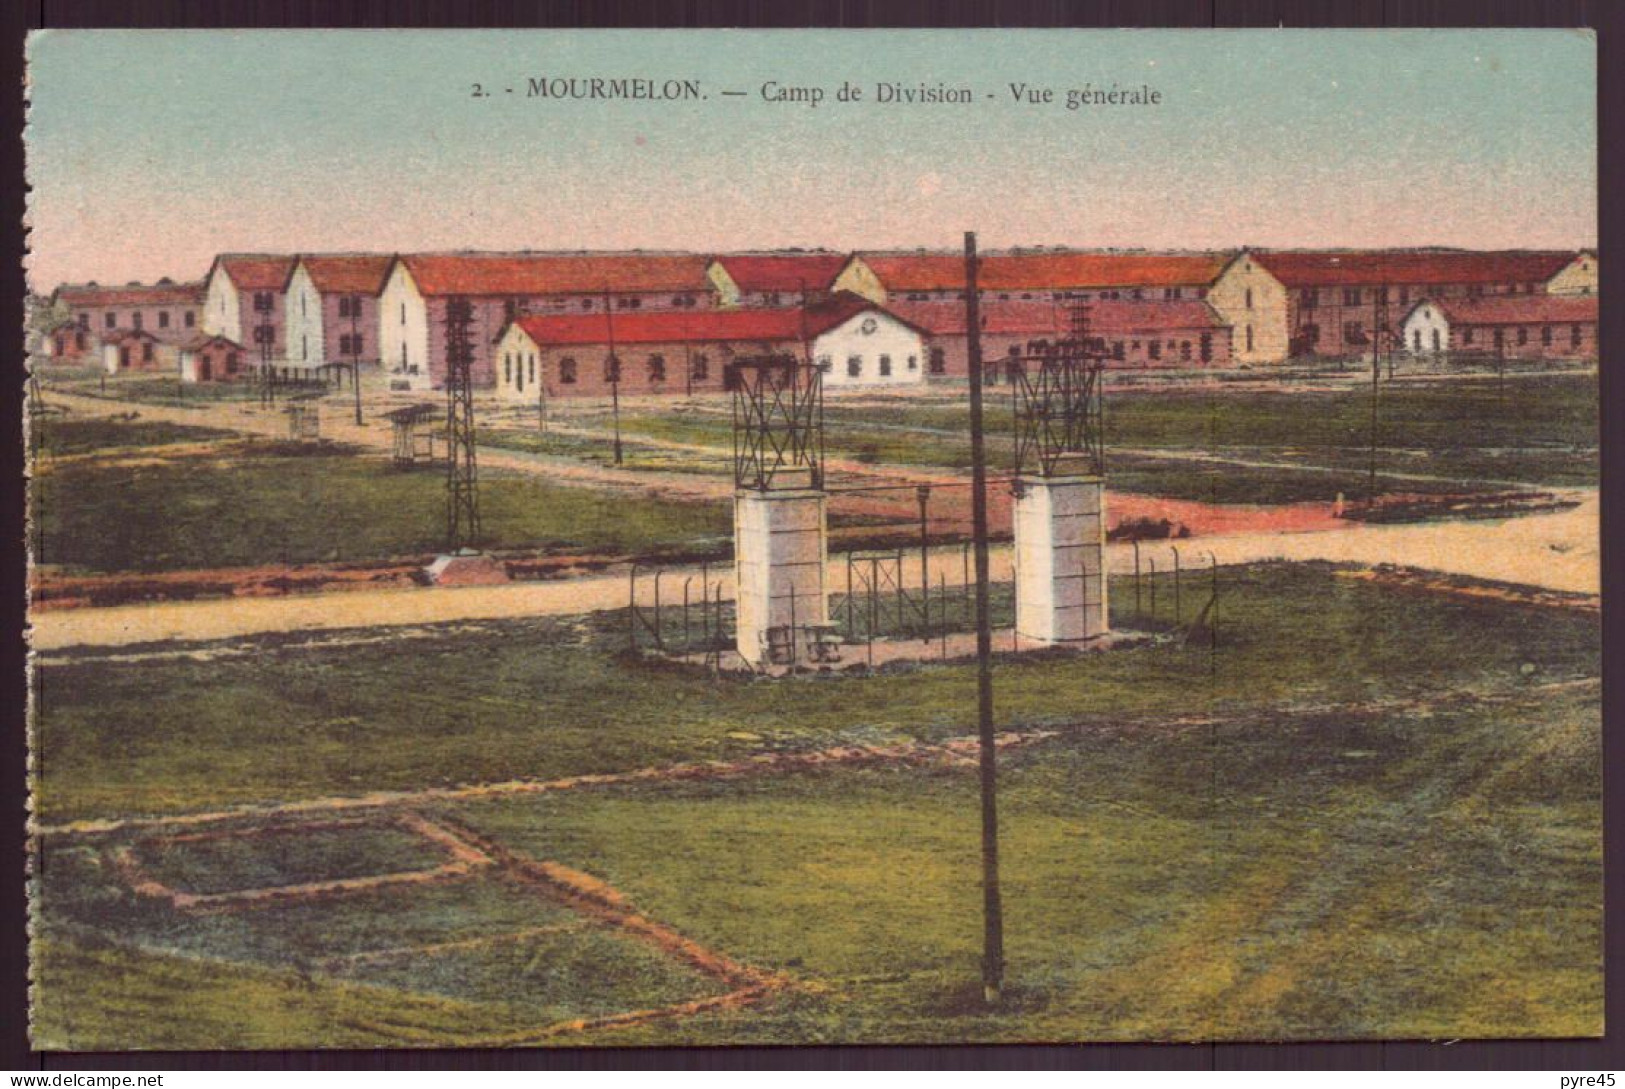 MOURMELON CAMP DE DIVISION VUE GENERALE - Casernes